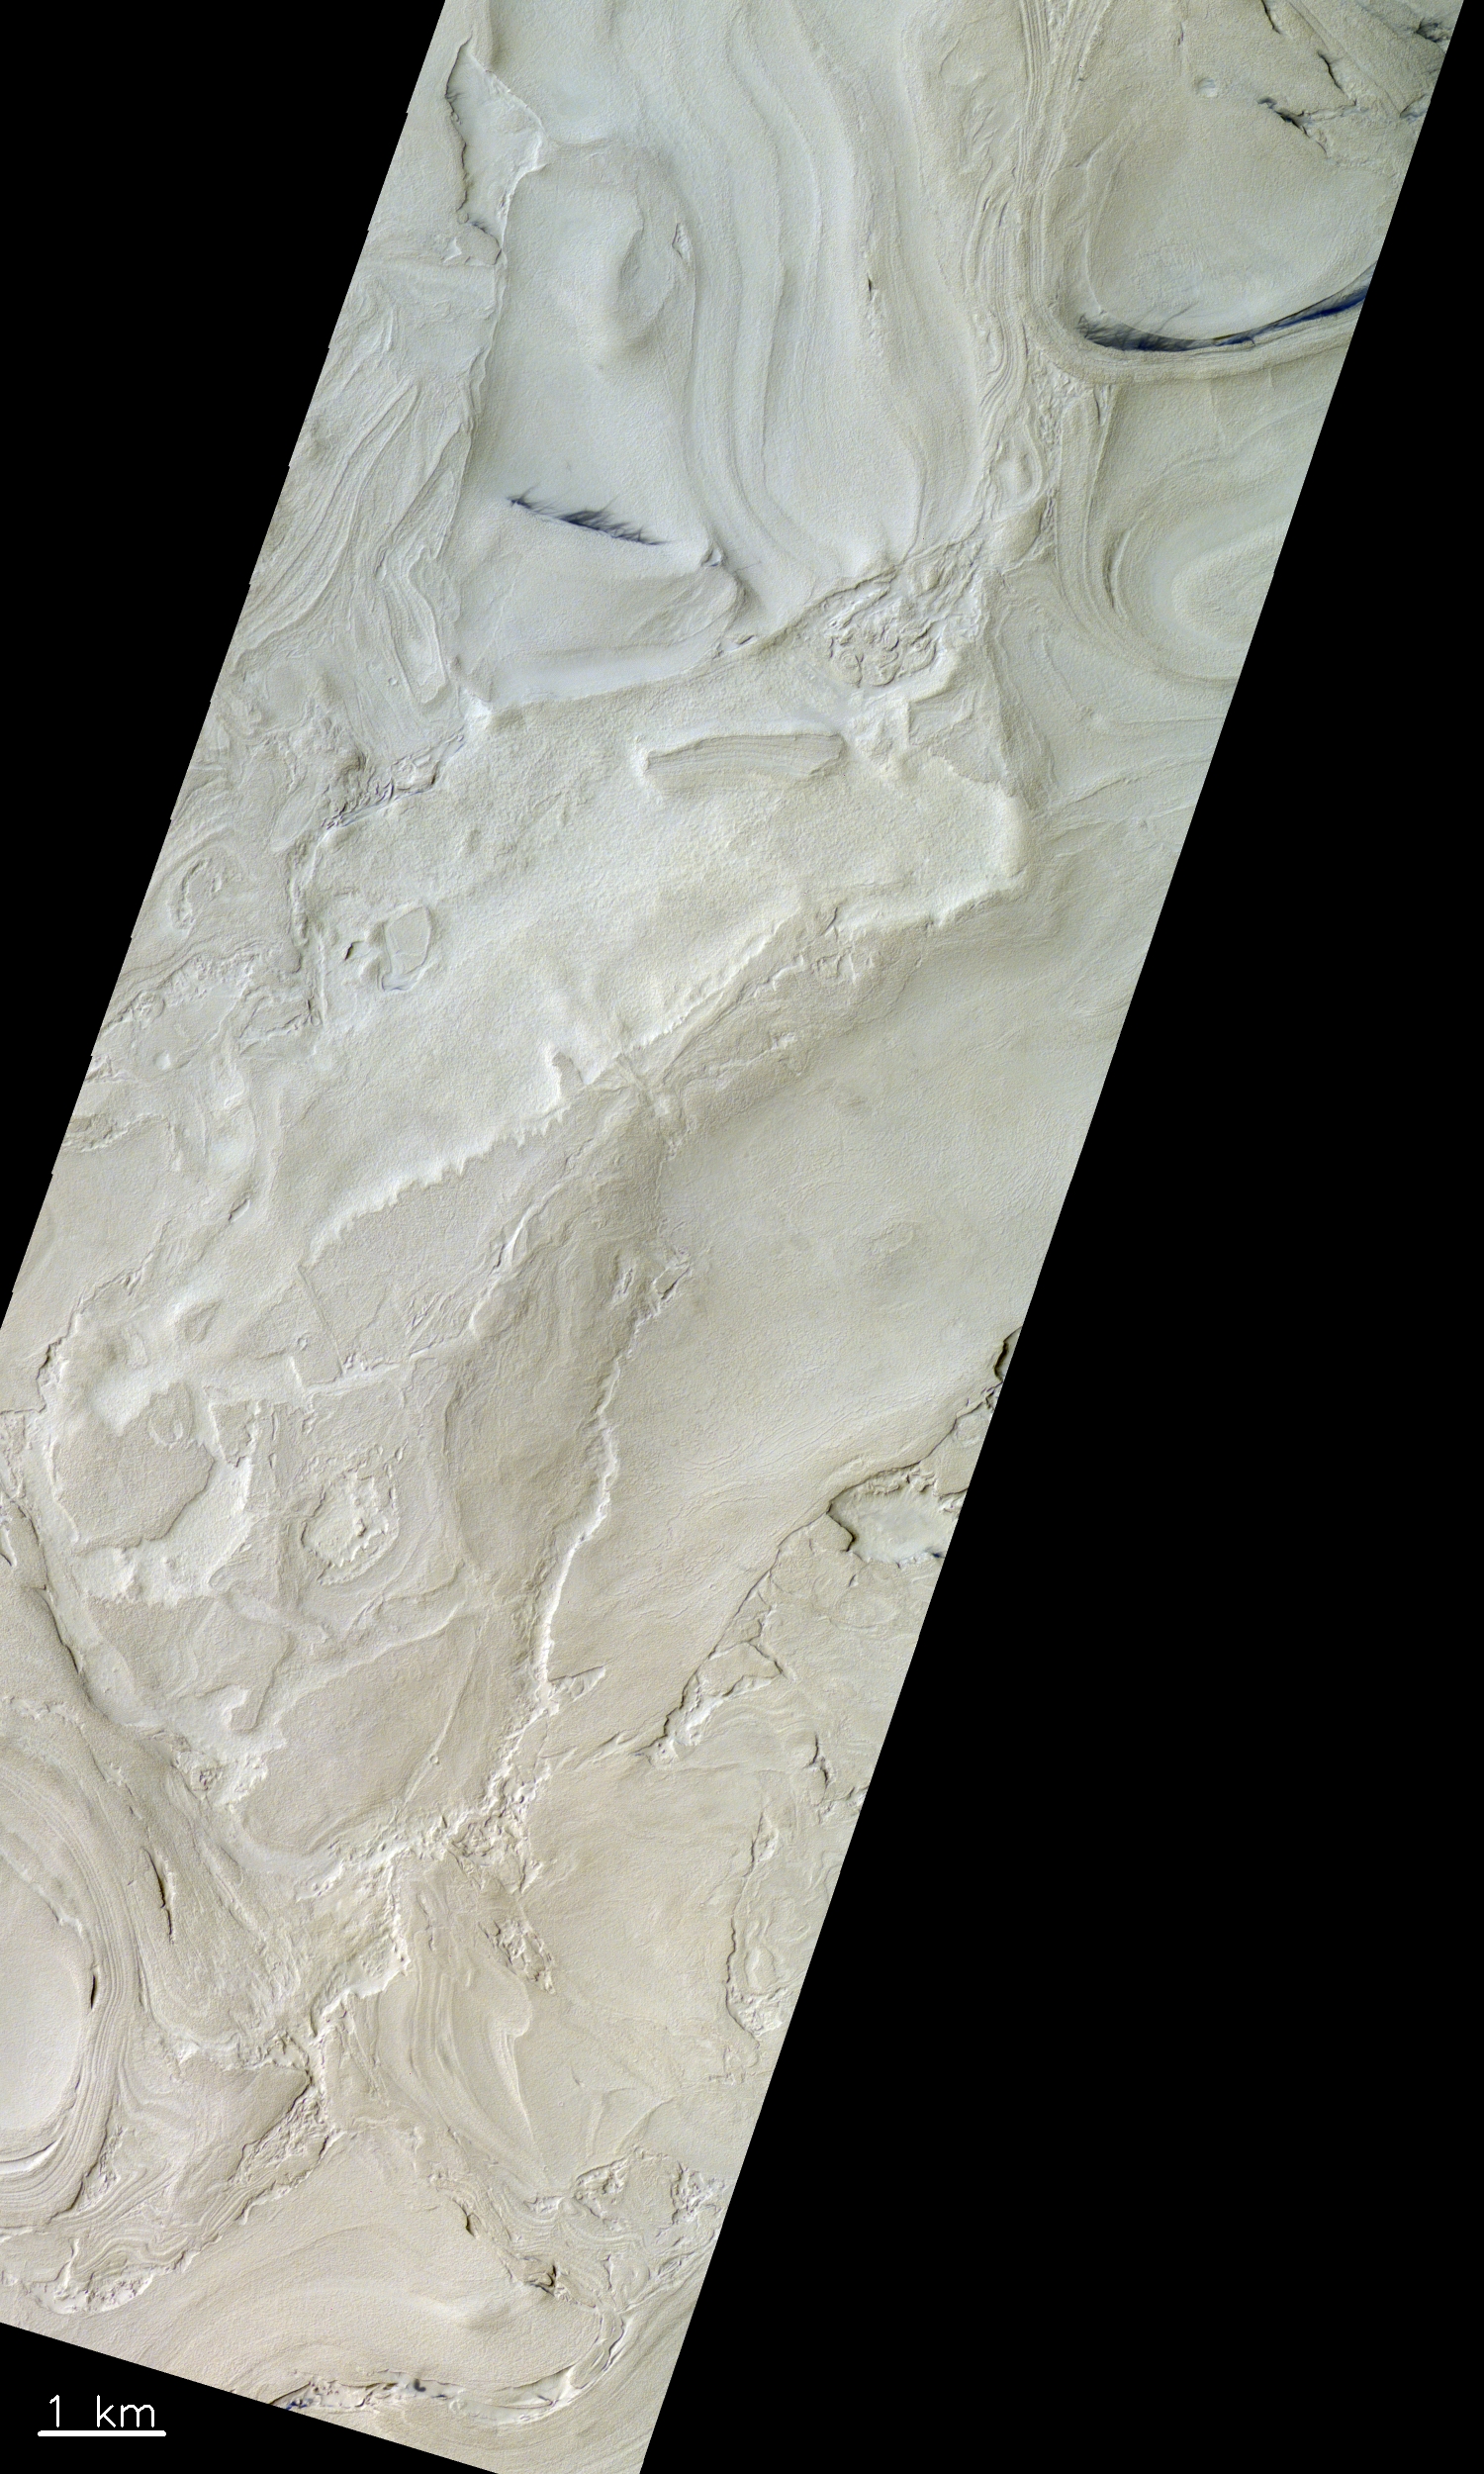 Ein Gebiet in der Region des Hellas-Beckens auf dem Mars. Dieses Bild stammt aus dem westlichen Teil des Beckens, in der sich die tiefgelegensten Stellen des Mars befinden (bis zu 7 km unter der definierten Nulllinie). © ESA/Roscosmos/CaSSIS